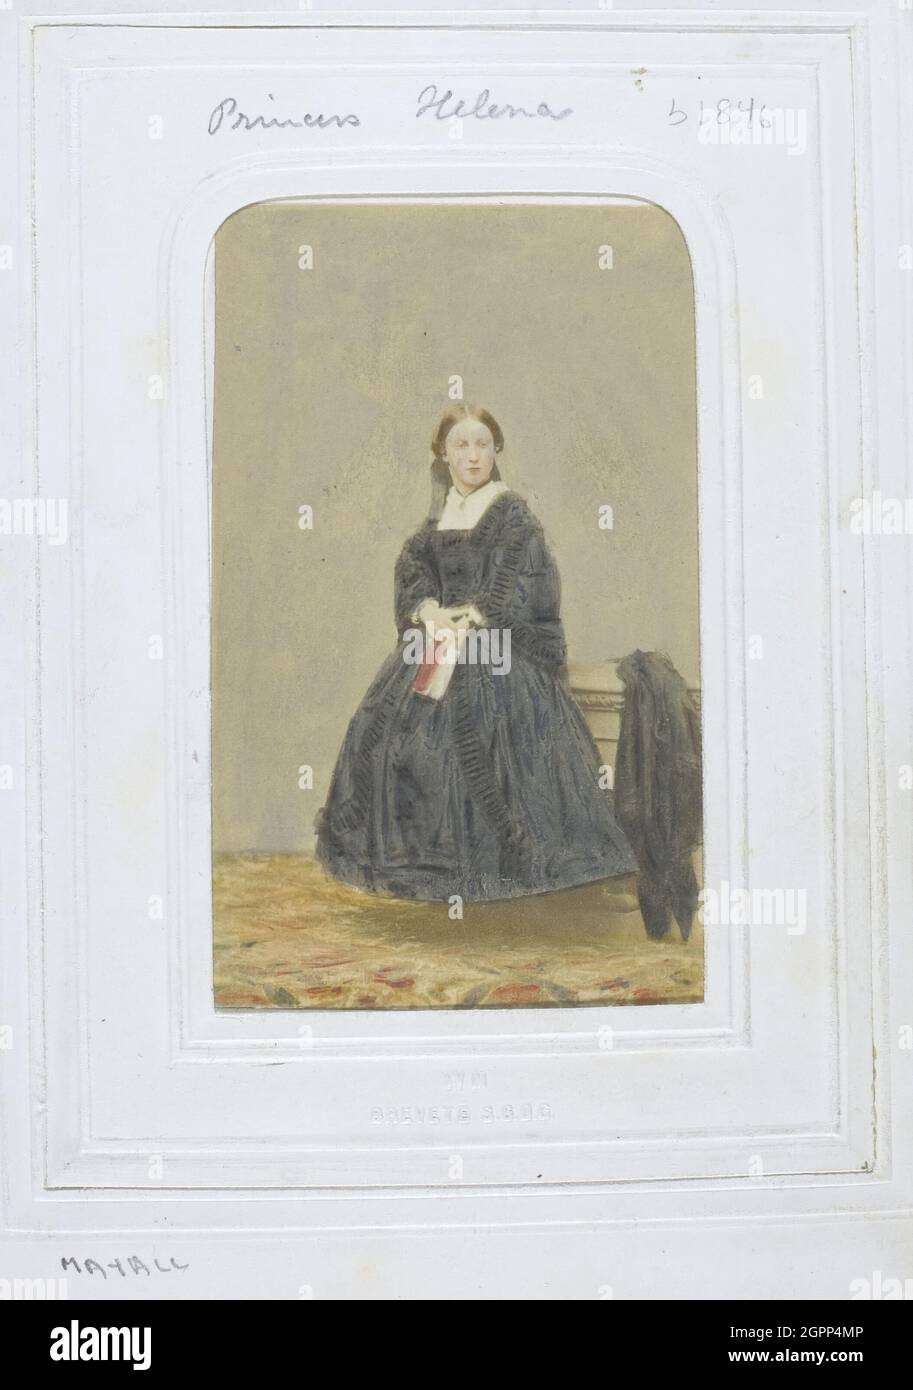 Princesse Helena, c. 1860. [Portrait de la princesse Helena, fille de la  reine Victoria]. Imprimé albumine Photo Stock - Alamy